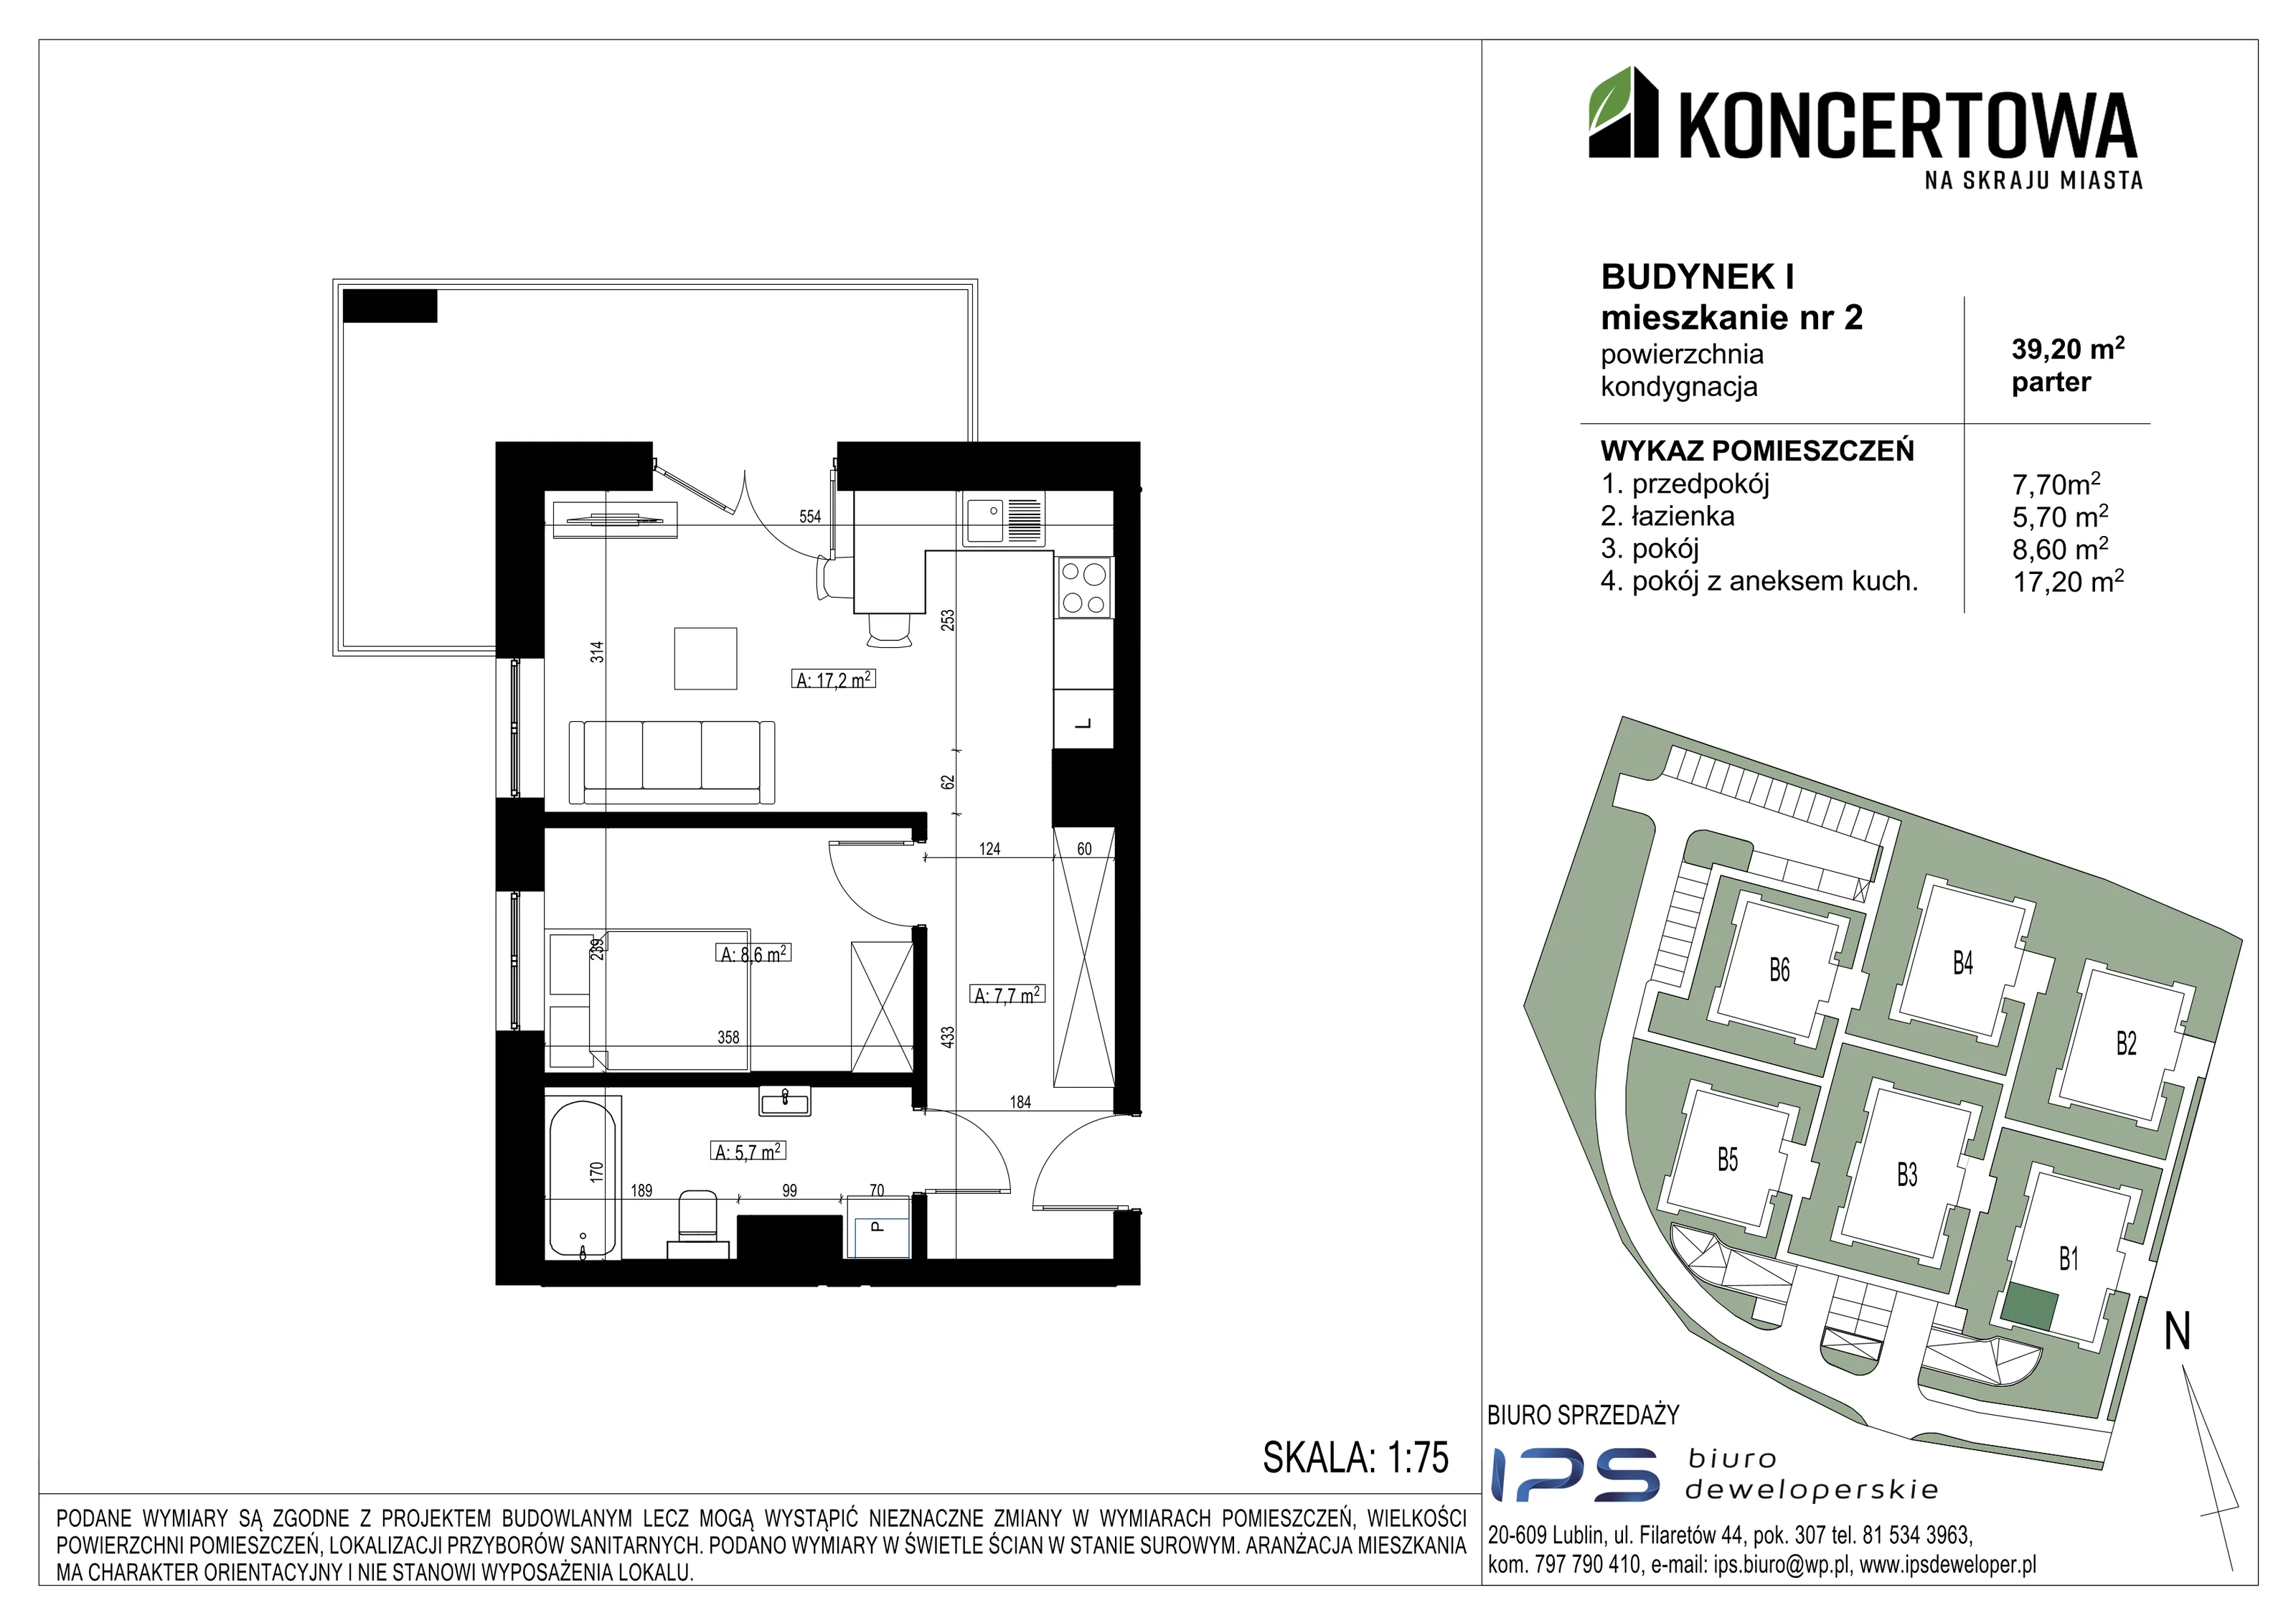 Mieszkanie 39,20 m², parter, oferta nr 2_I/2, KONCERTOWA - Na skraju miasta, Lublin, Czechów Północny, Czechów Północny,  ul. Koncertowa